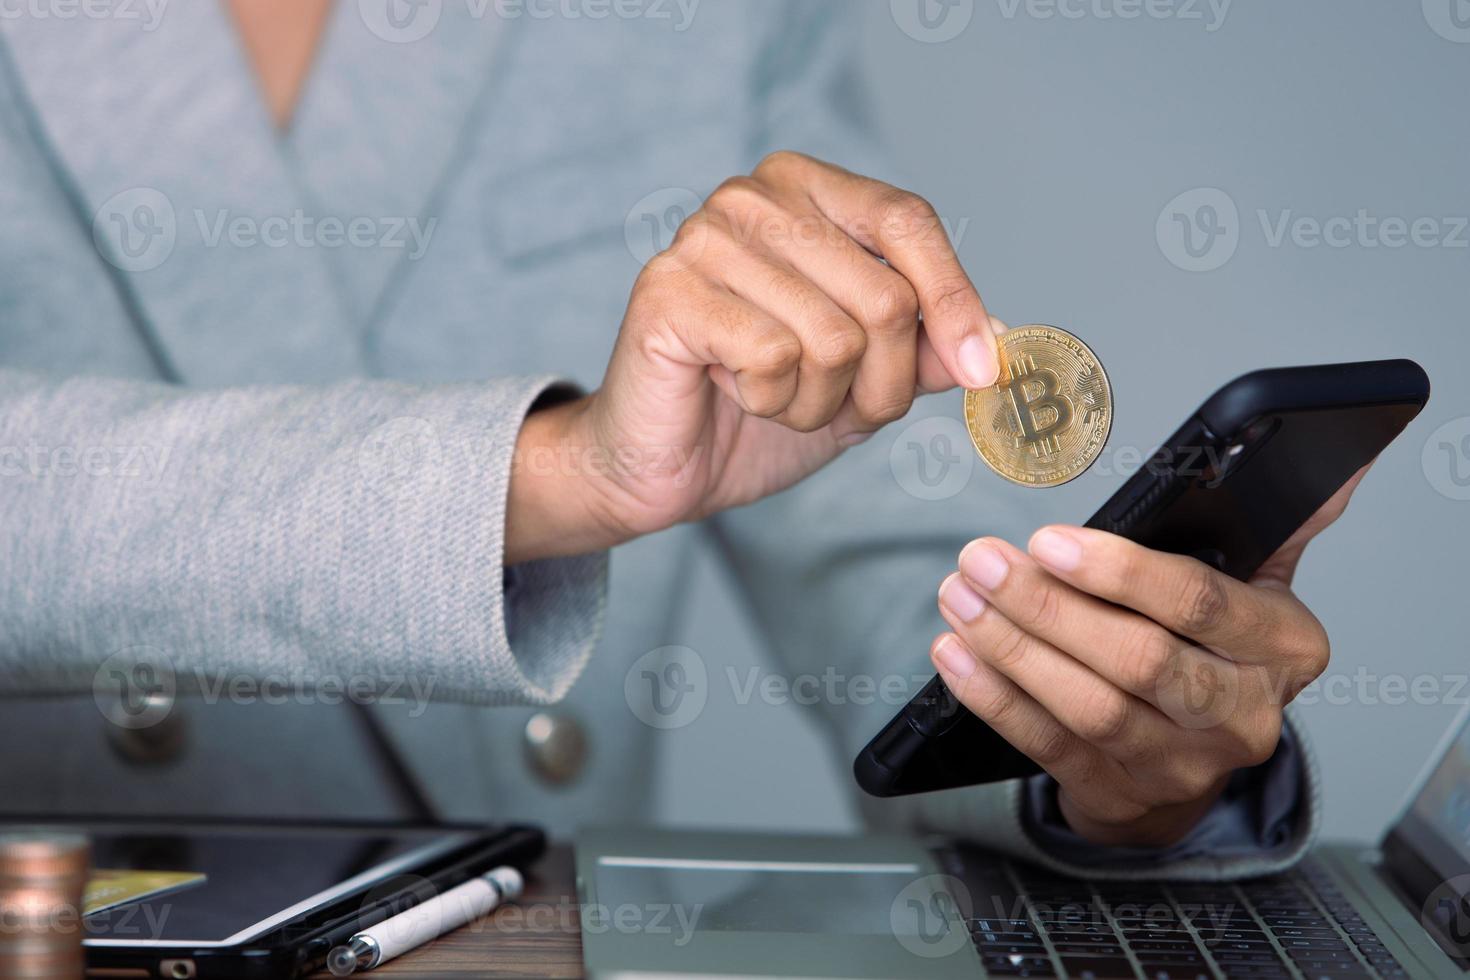 mujer de negocios de oficina mira la criptomoneda bitcoin btc como una cuenta bancaria de ahorro en el comercio de intercambio financiero por dinero en efectivo de tecnología de dinero digital. persona invierte en el mercado monetario de pagos electrónicos en línea foto